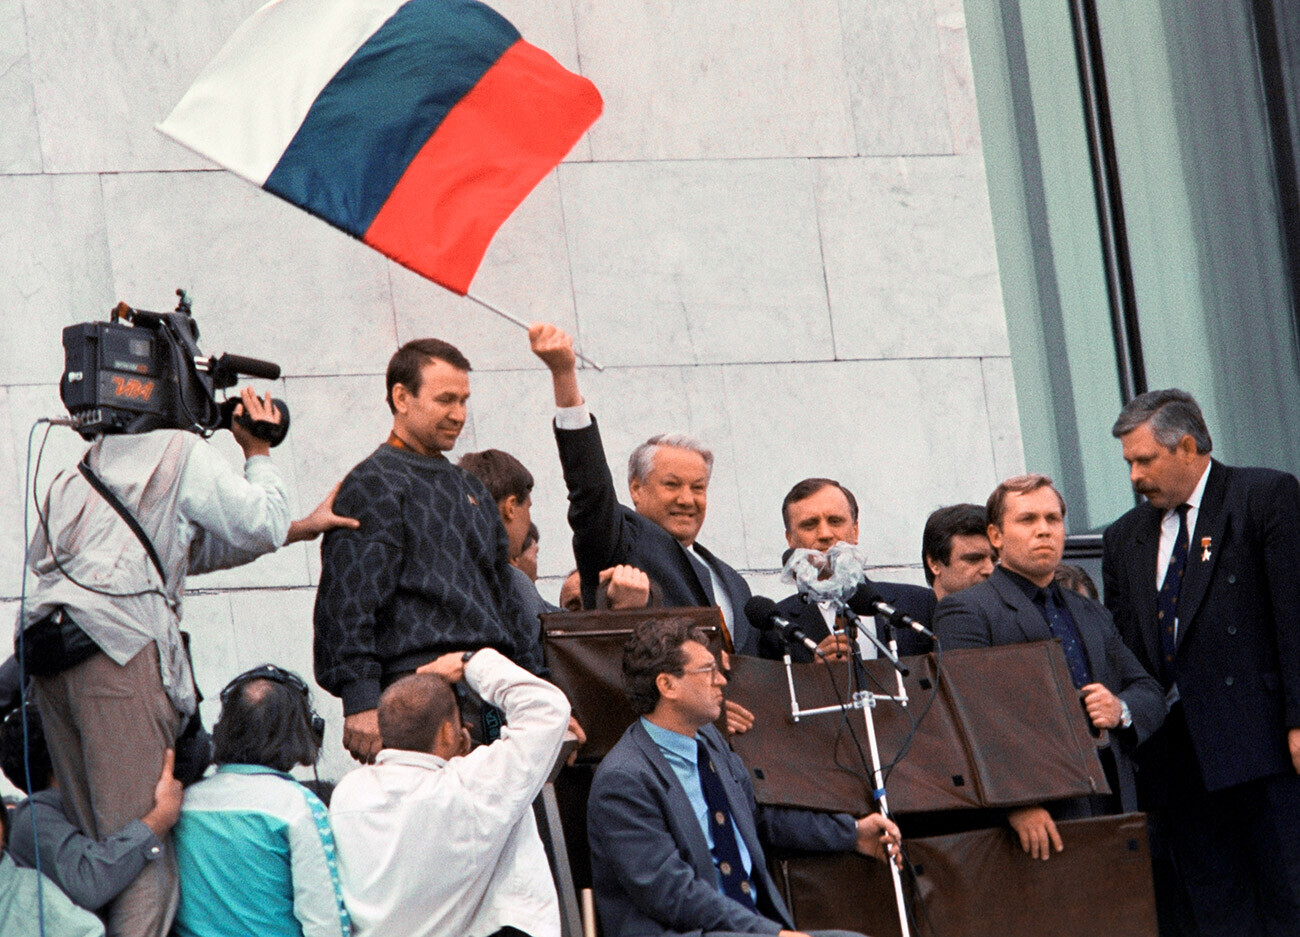 Протести пред Белата куќа во Москва во август 1991 година. Претседателот на Русија  Борис Николаевич Елцин (со знамето).

